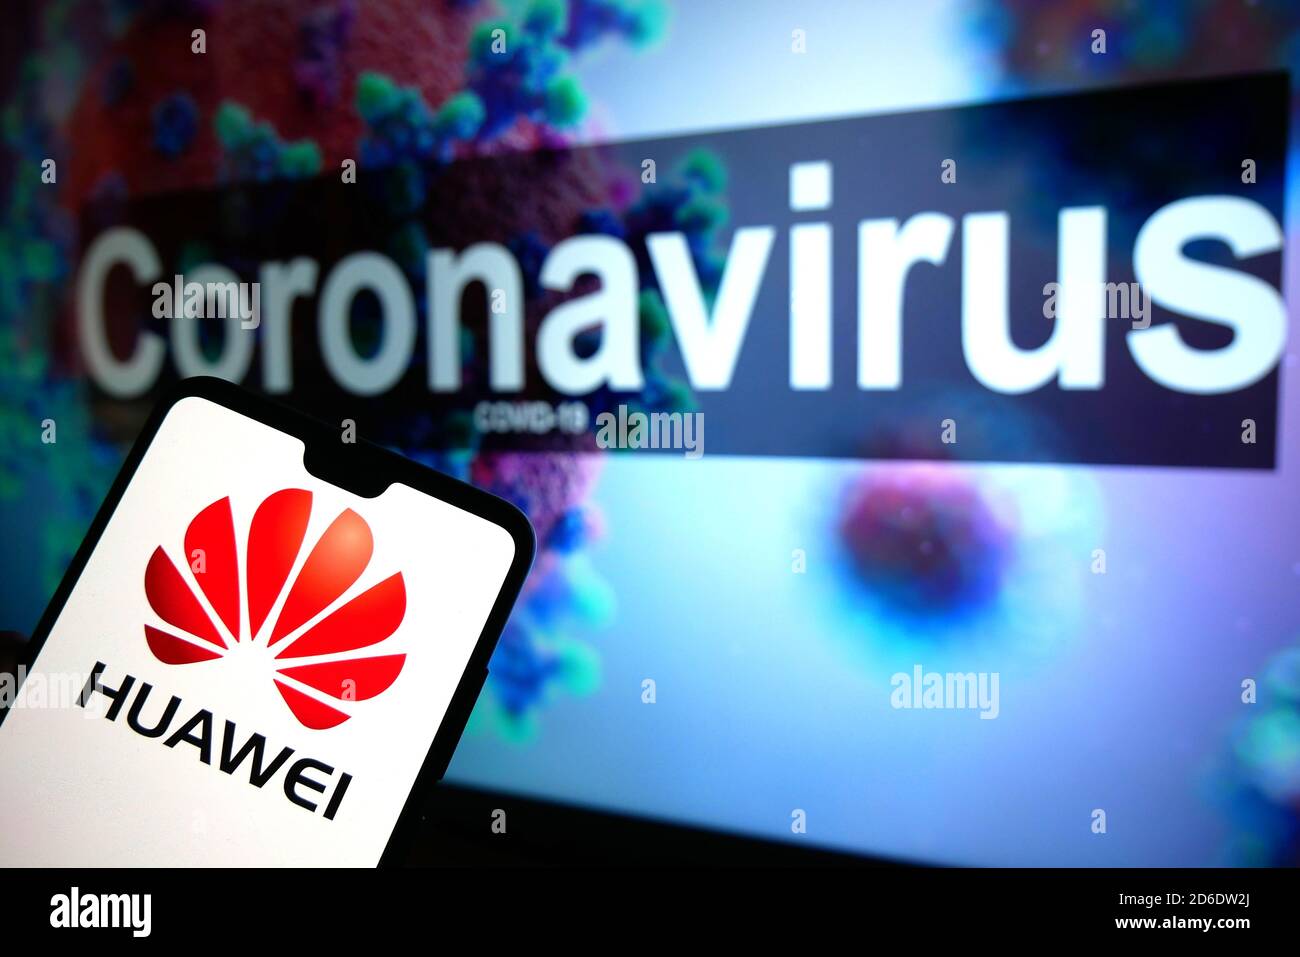 El logotipo de Huawei visto en un teléfono móvil con un modelo ilustrativo del Coronavirus mostrado en un monitor en el fondo. Foto de stock